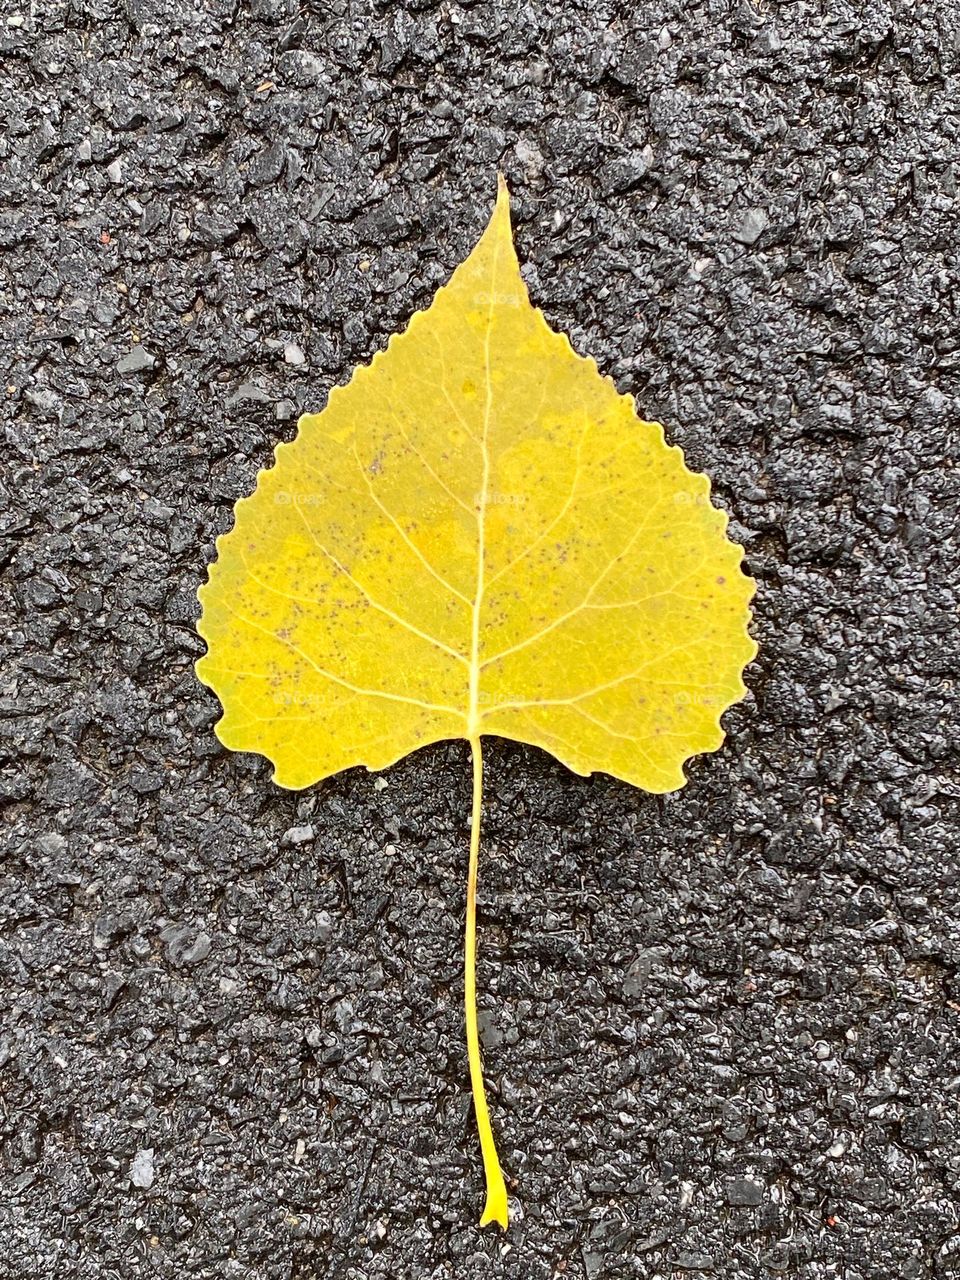 Fallen aspen leaf on a roadway